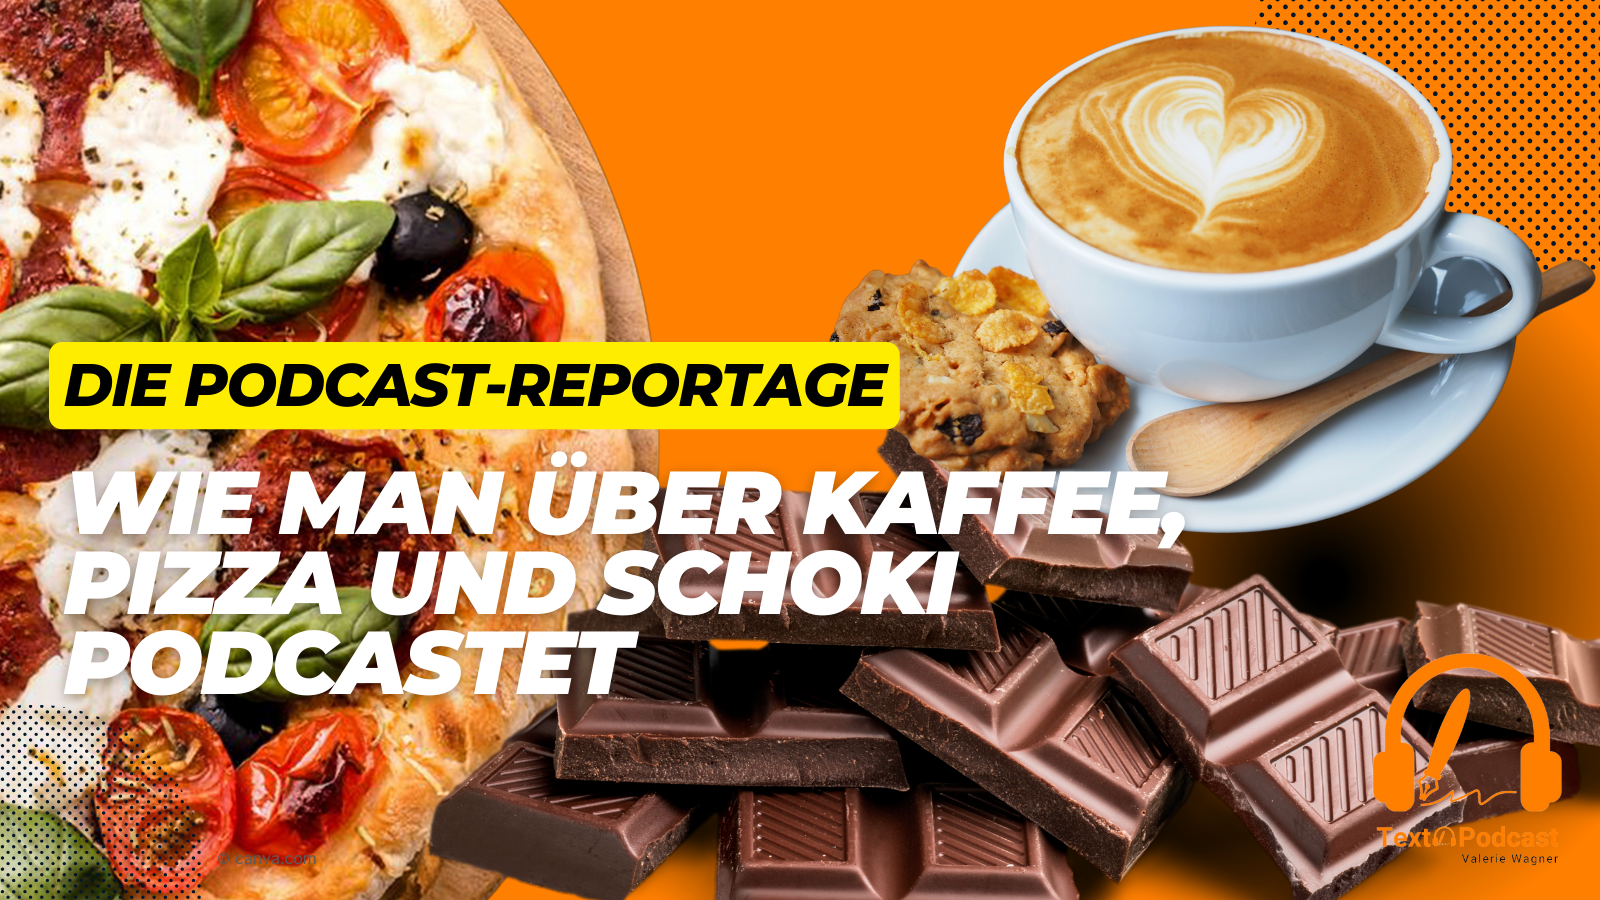 Wie man über Kaffee, Pizza und Schoki podcastet